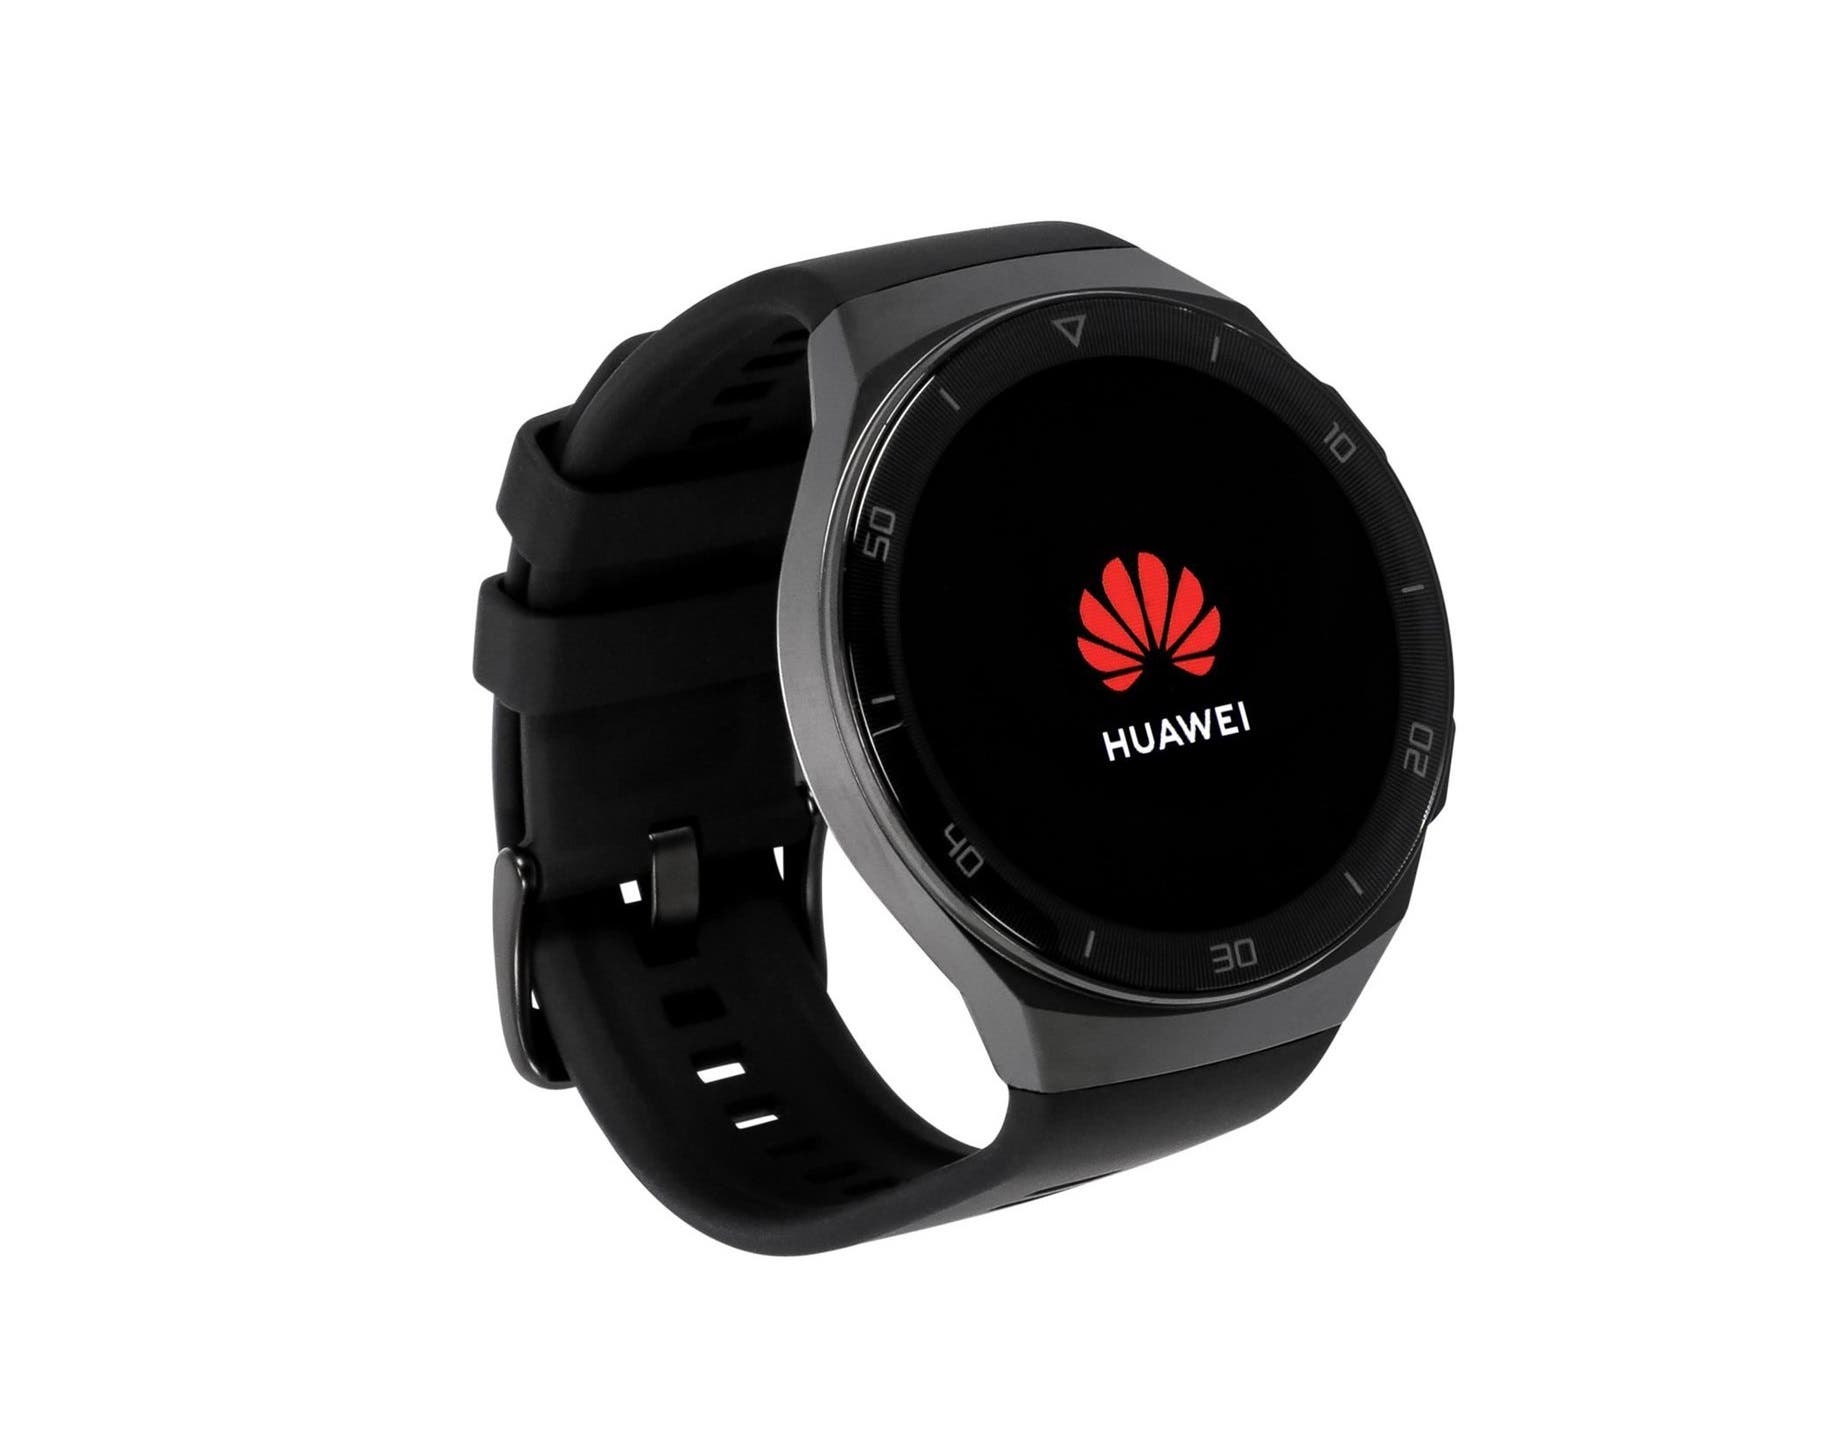 Afscheid Matroos Feest Nova Watch: new smartwatch from Huawei coming soon- Gizchina.com